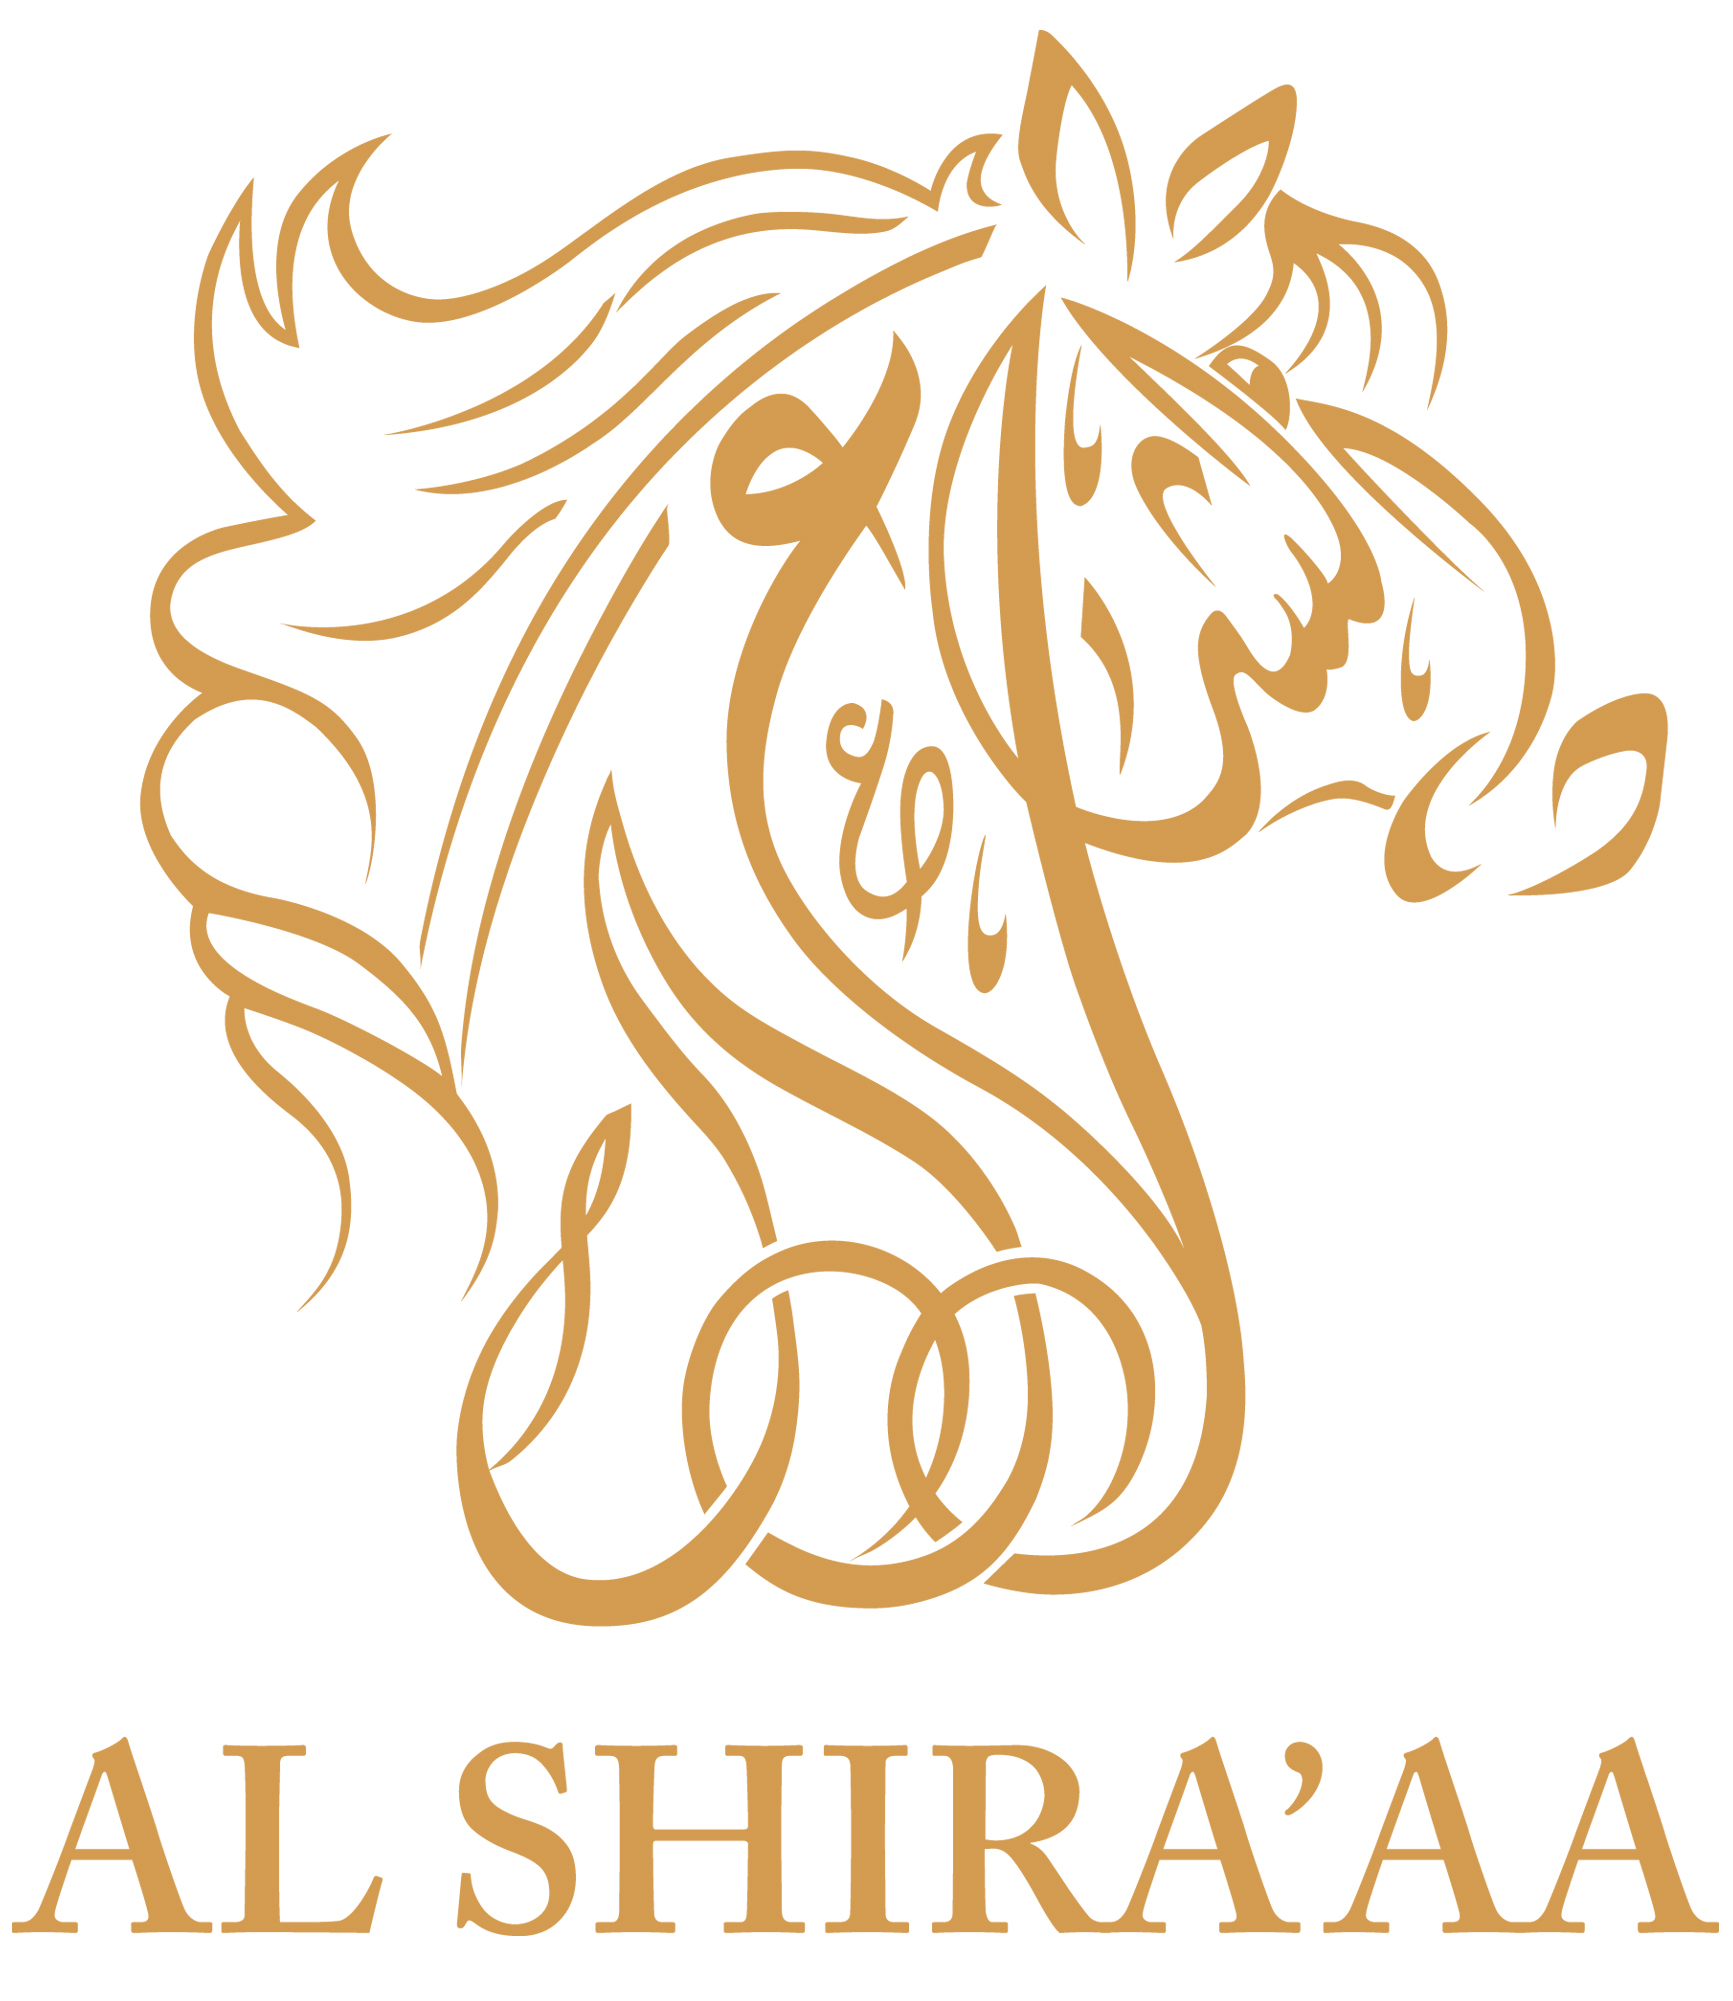 Al Shira'aa